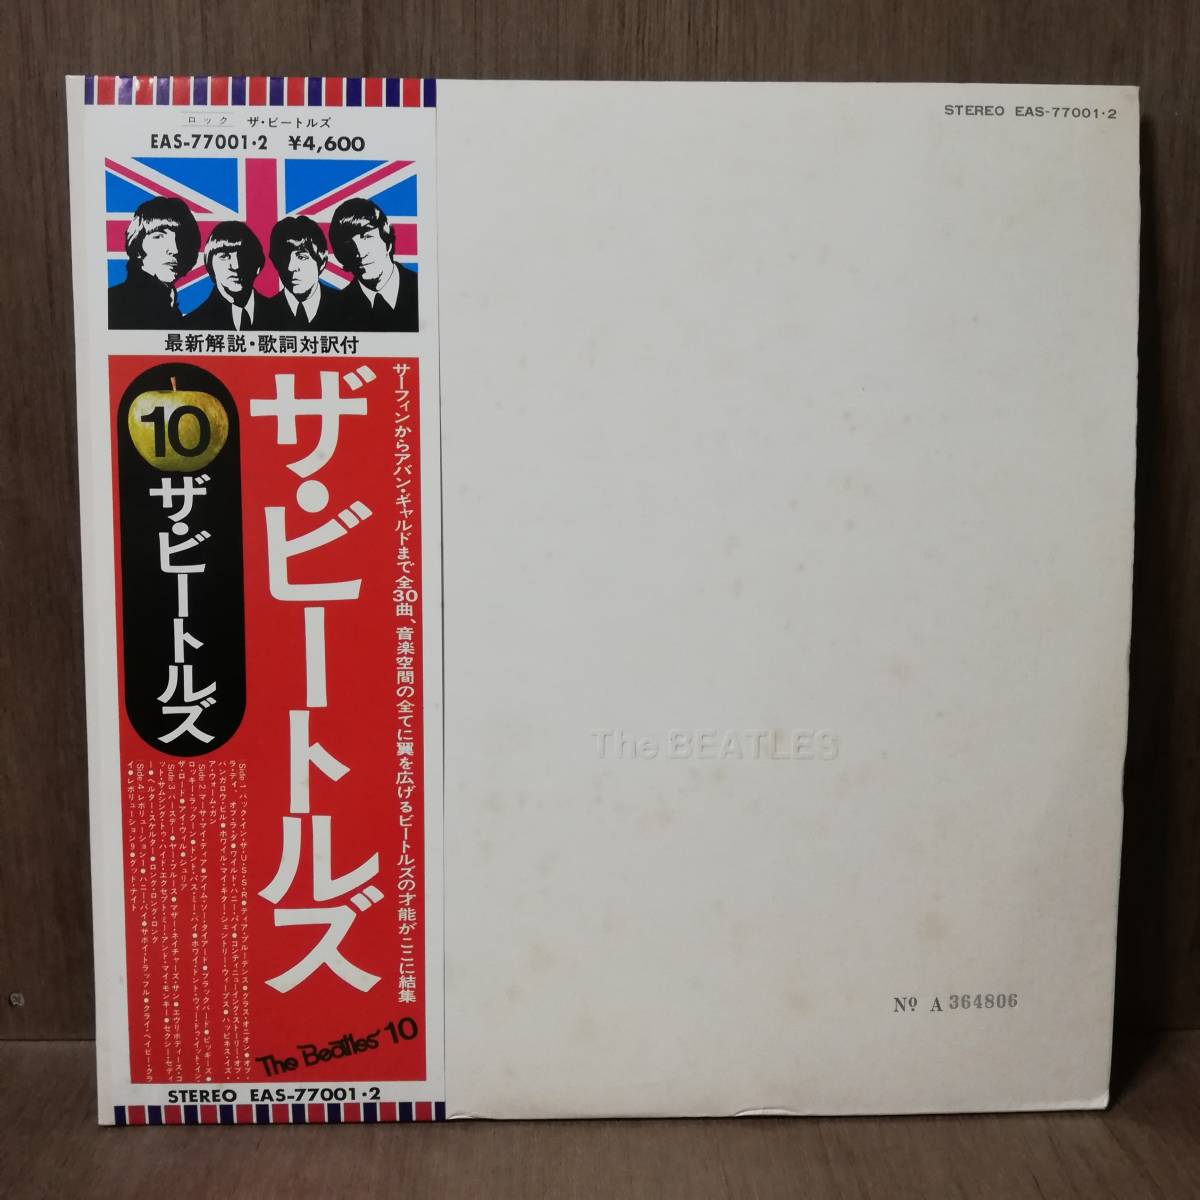 ヤフオク! -「beatles white album」(レコード) の落札相場・落札価格